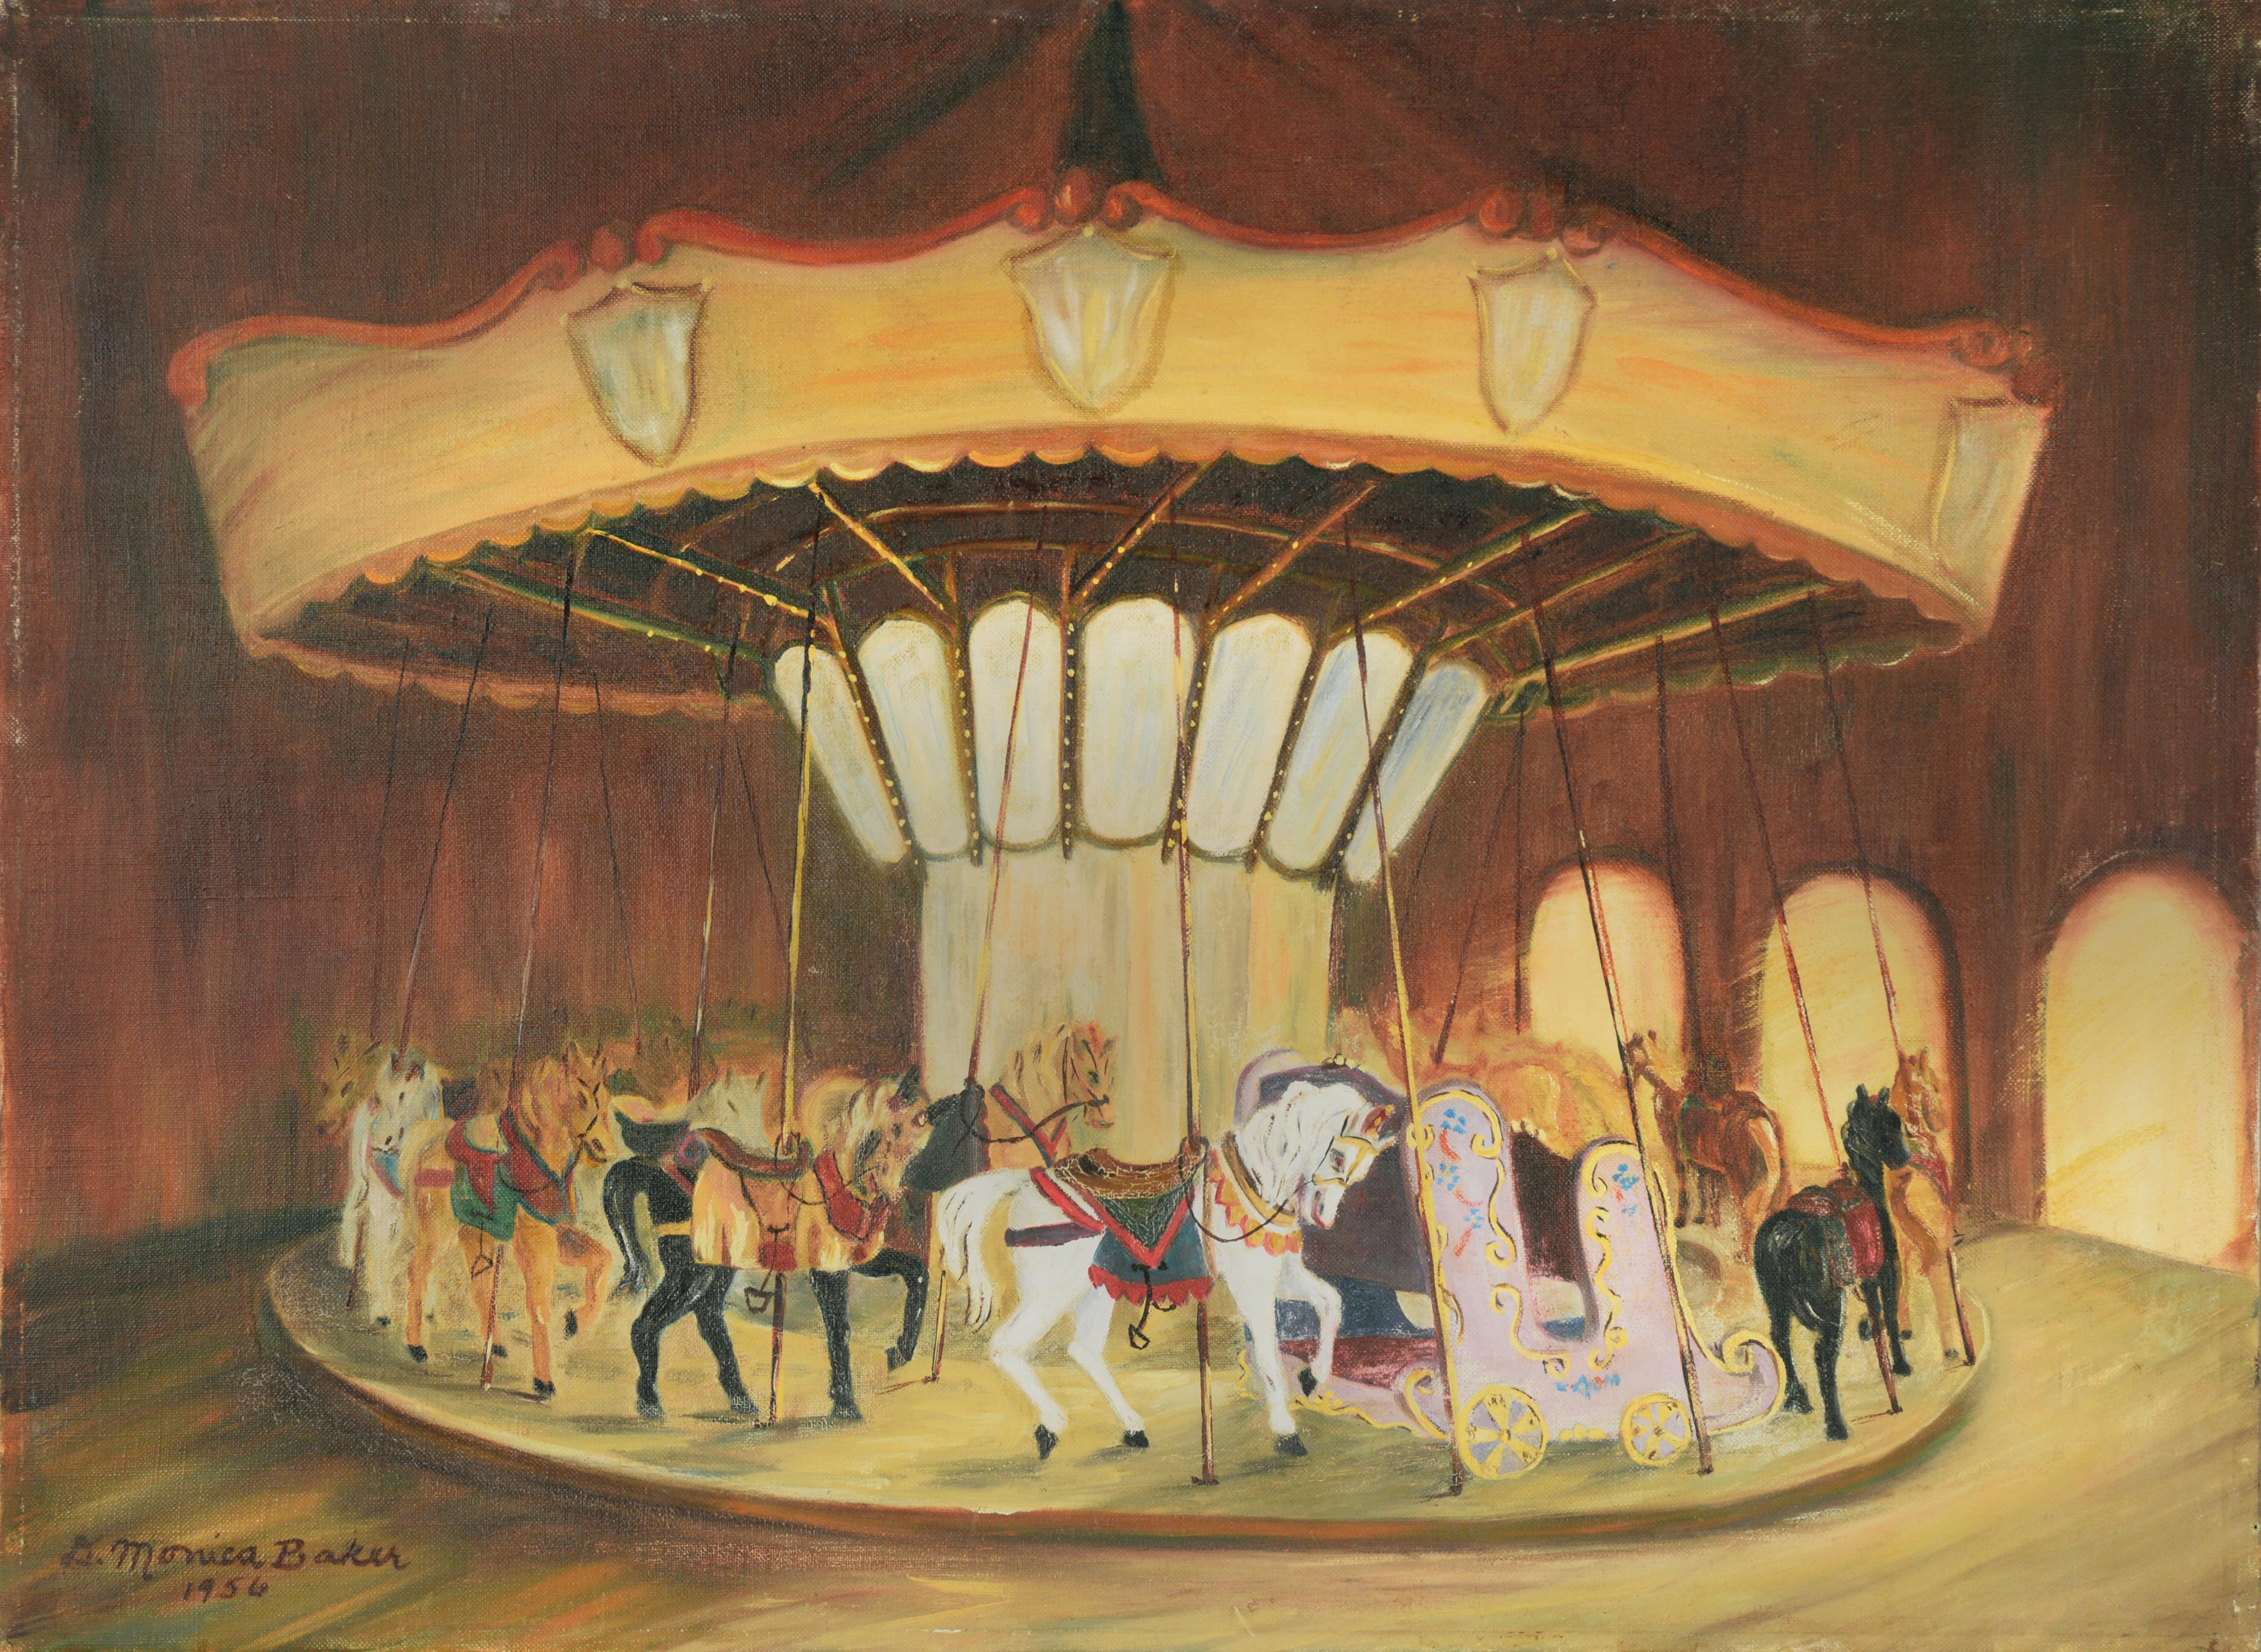 White Horse Carousel, 1956 - Original Oil Painting On Linen